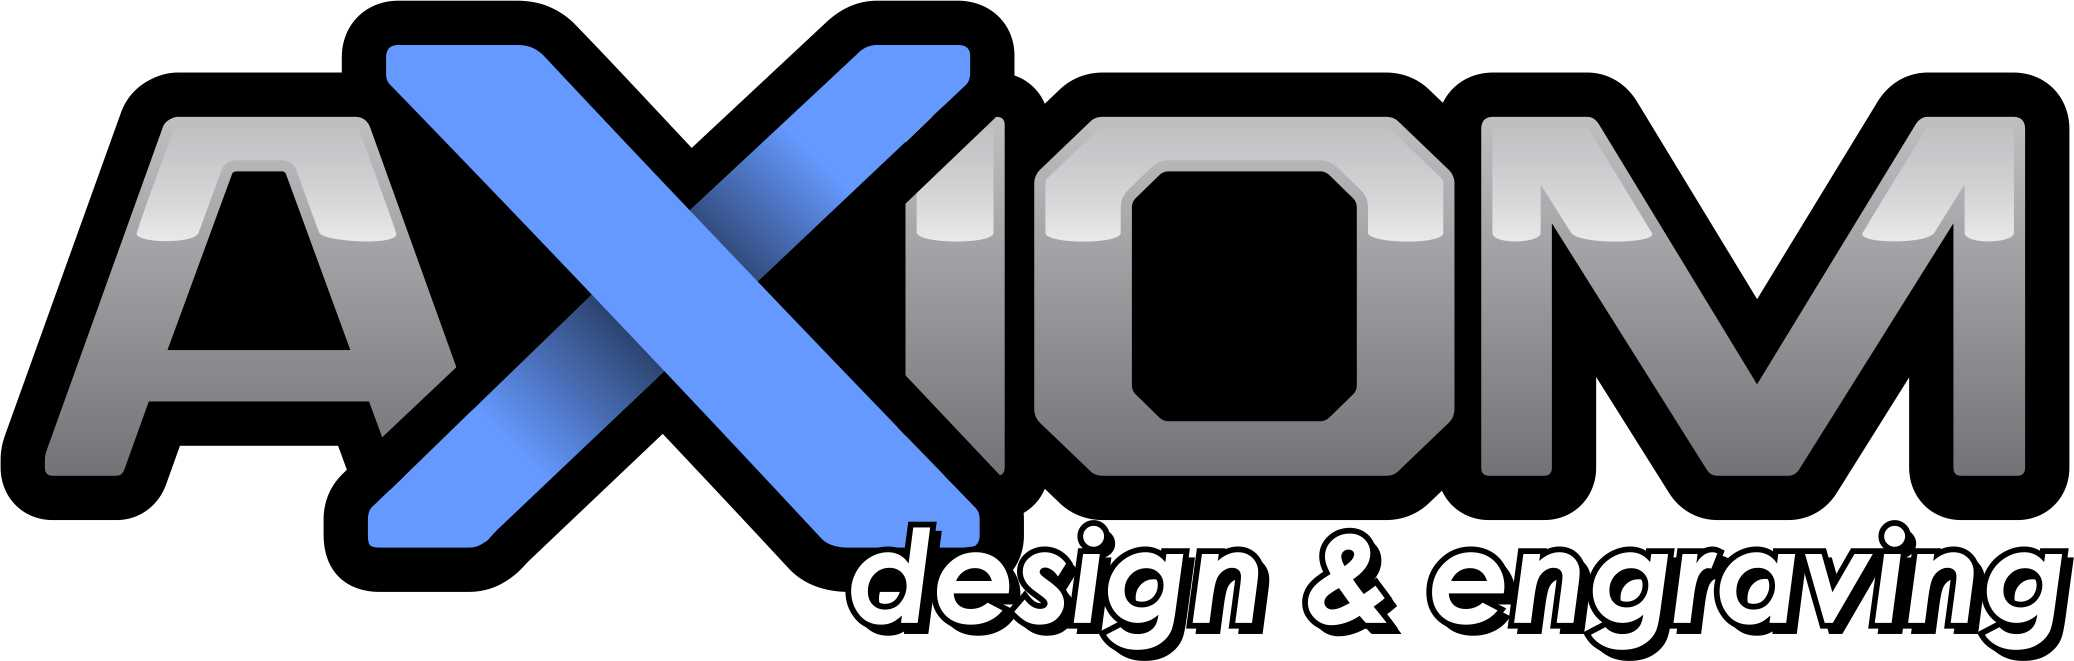 Axiom Design & Engraving